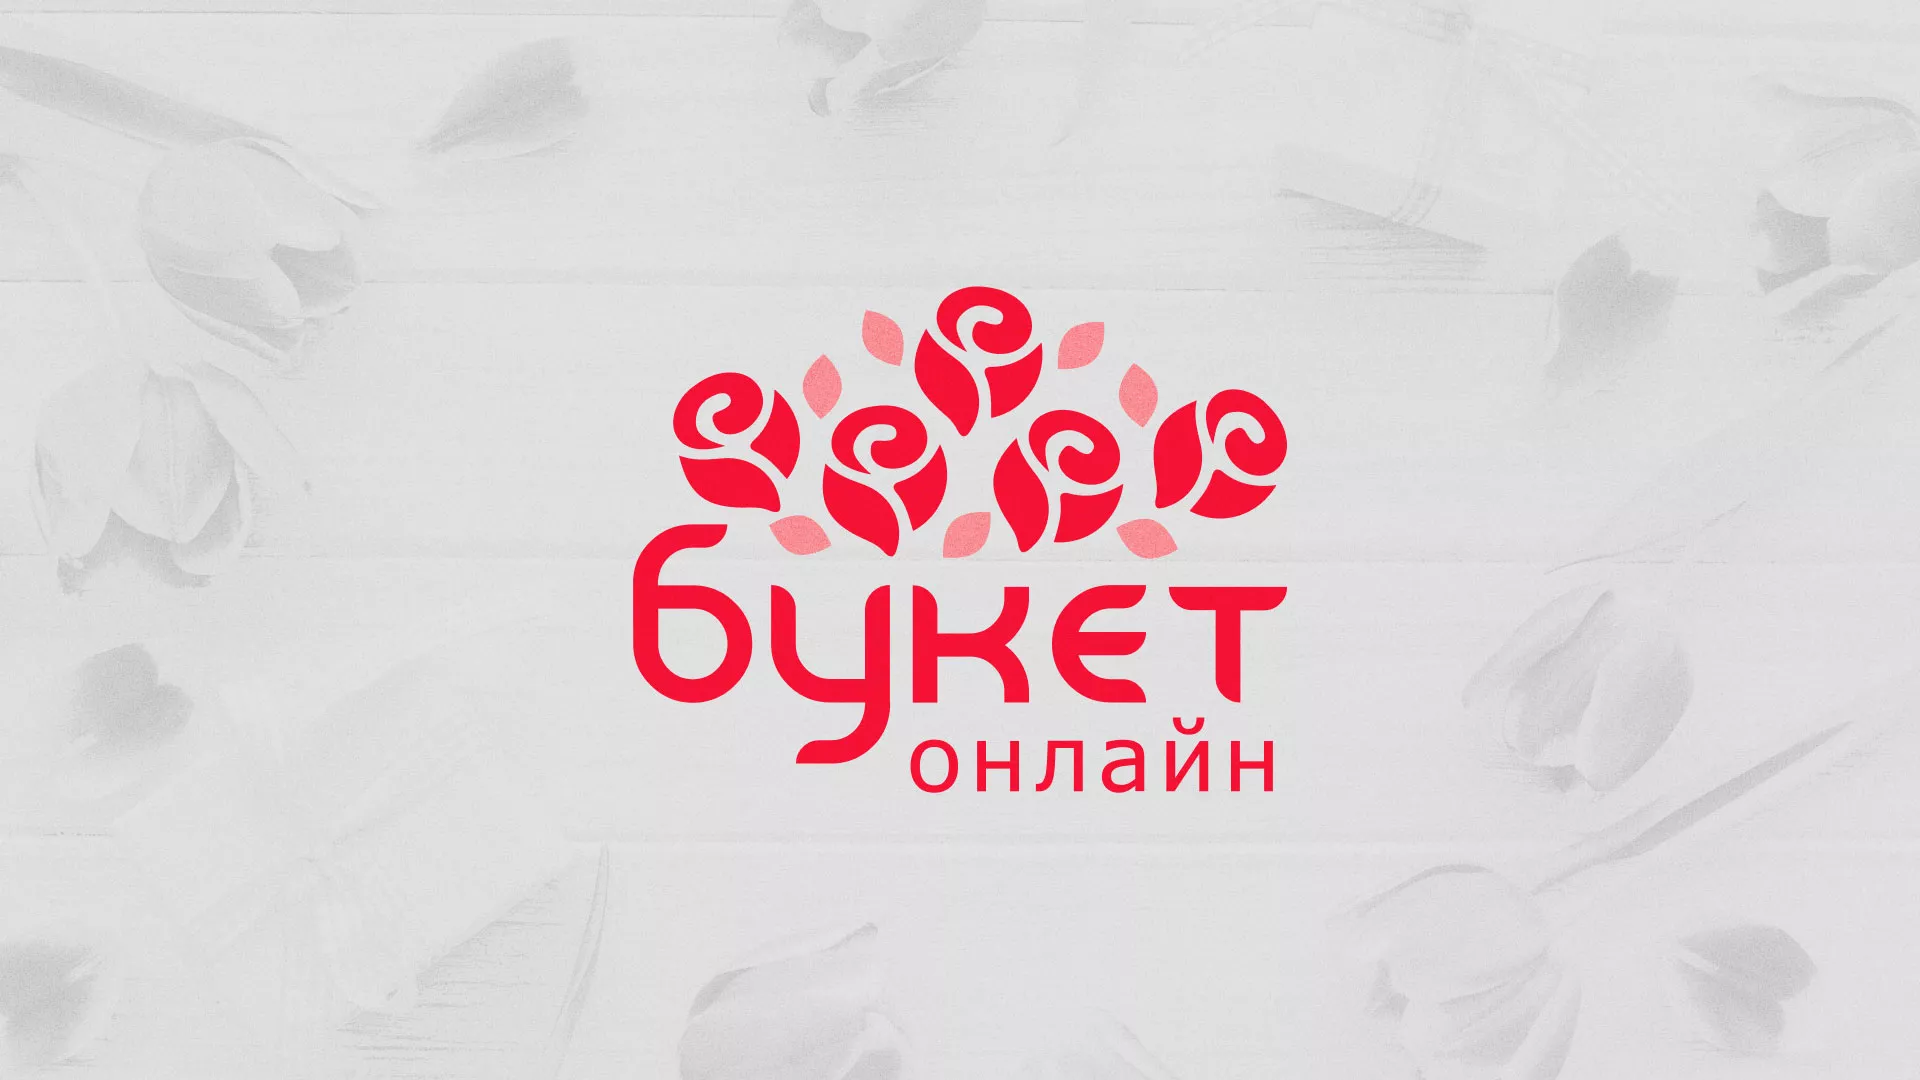 Создание интернет-магазина «Букет-онлайн» по цветам в Белгороде